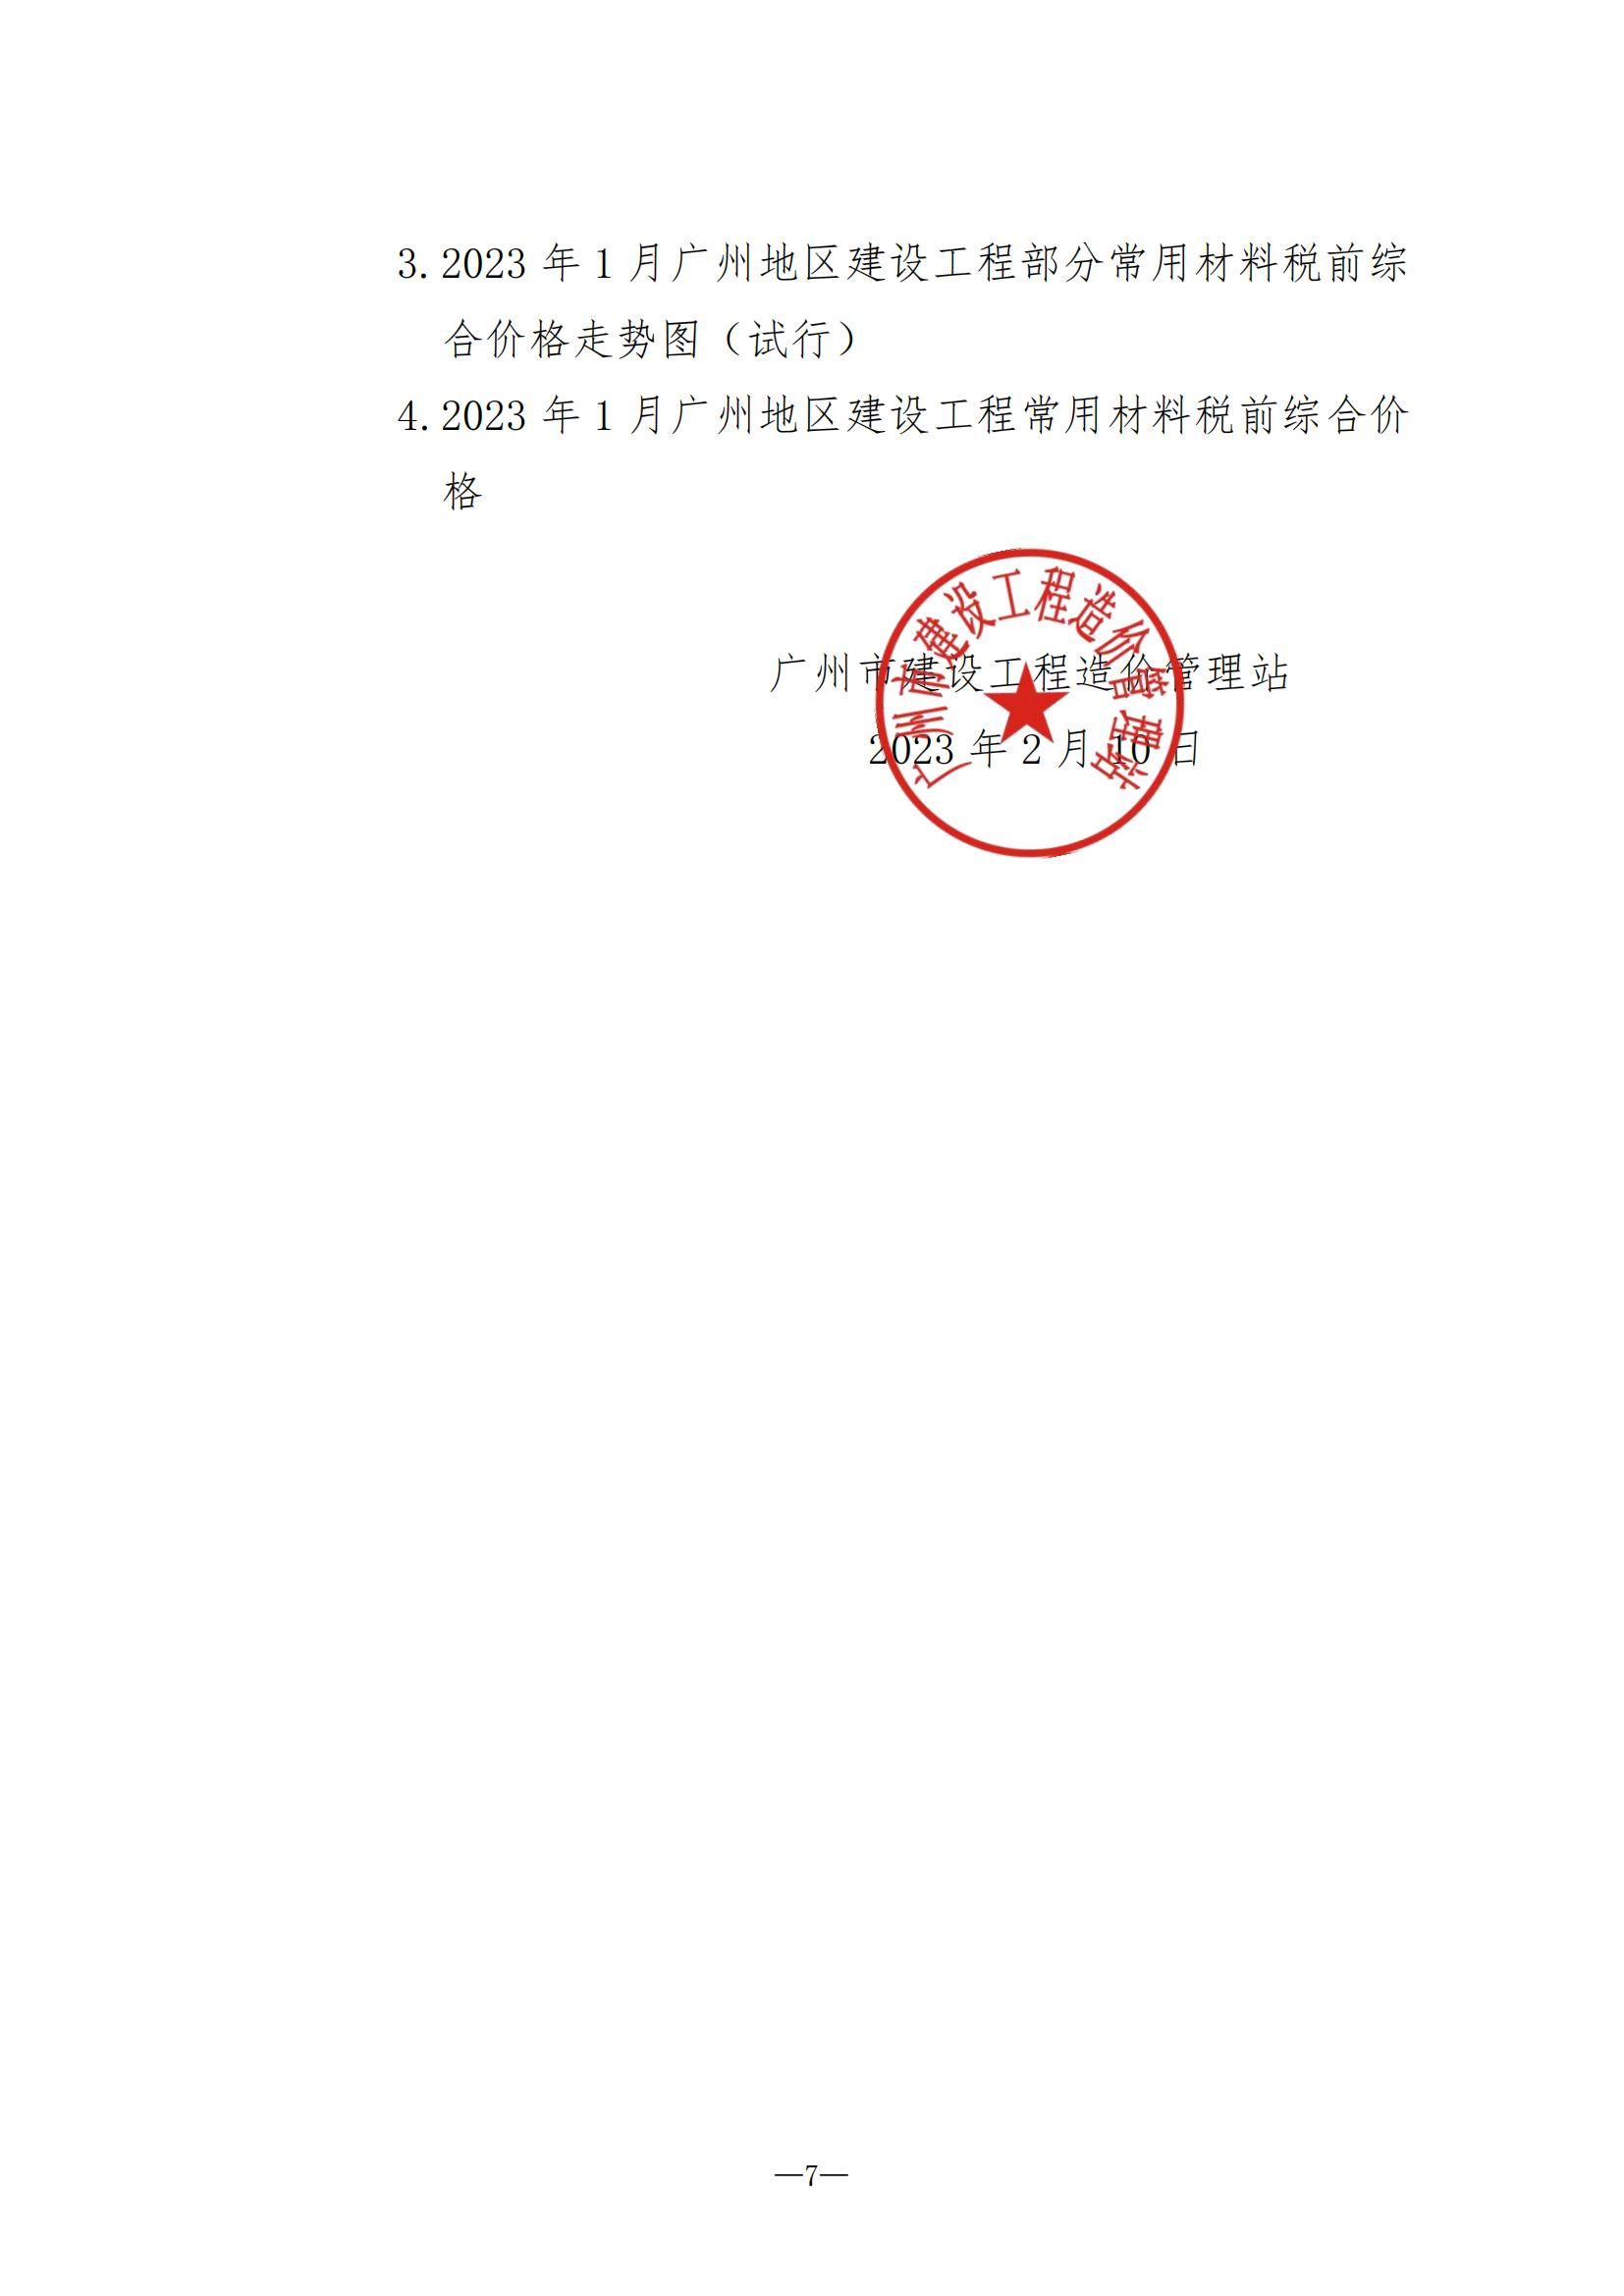 【转】关于发布2023年1月份广州市建设工程价格信息及有关计价办法的通知(穗建造价[2023]11号)-1